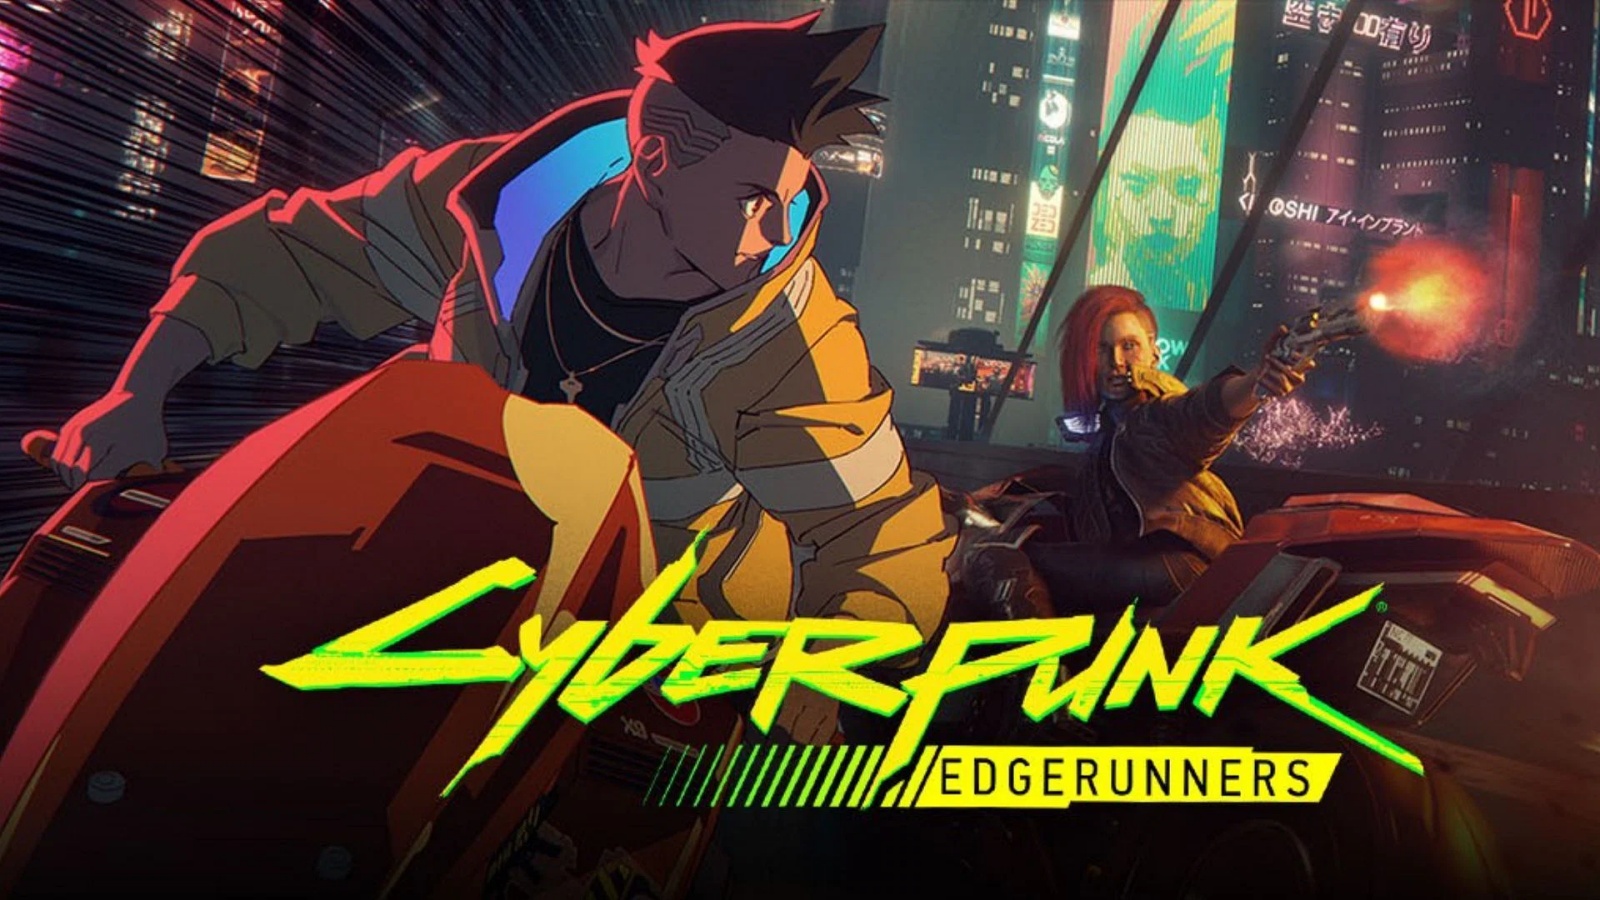 Cyberpunk 2077' Sees Massive Growth Following Release of 'Cyberpunk:  Edgerunners